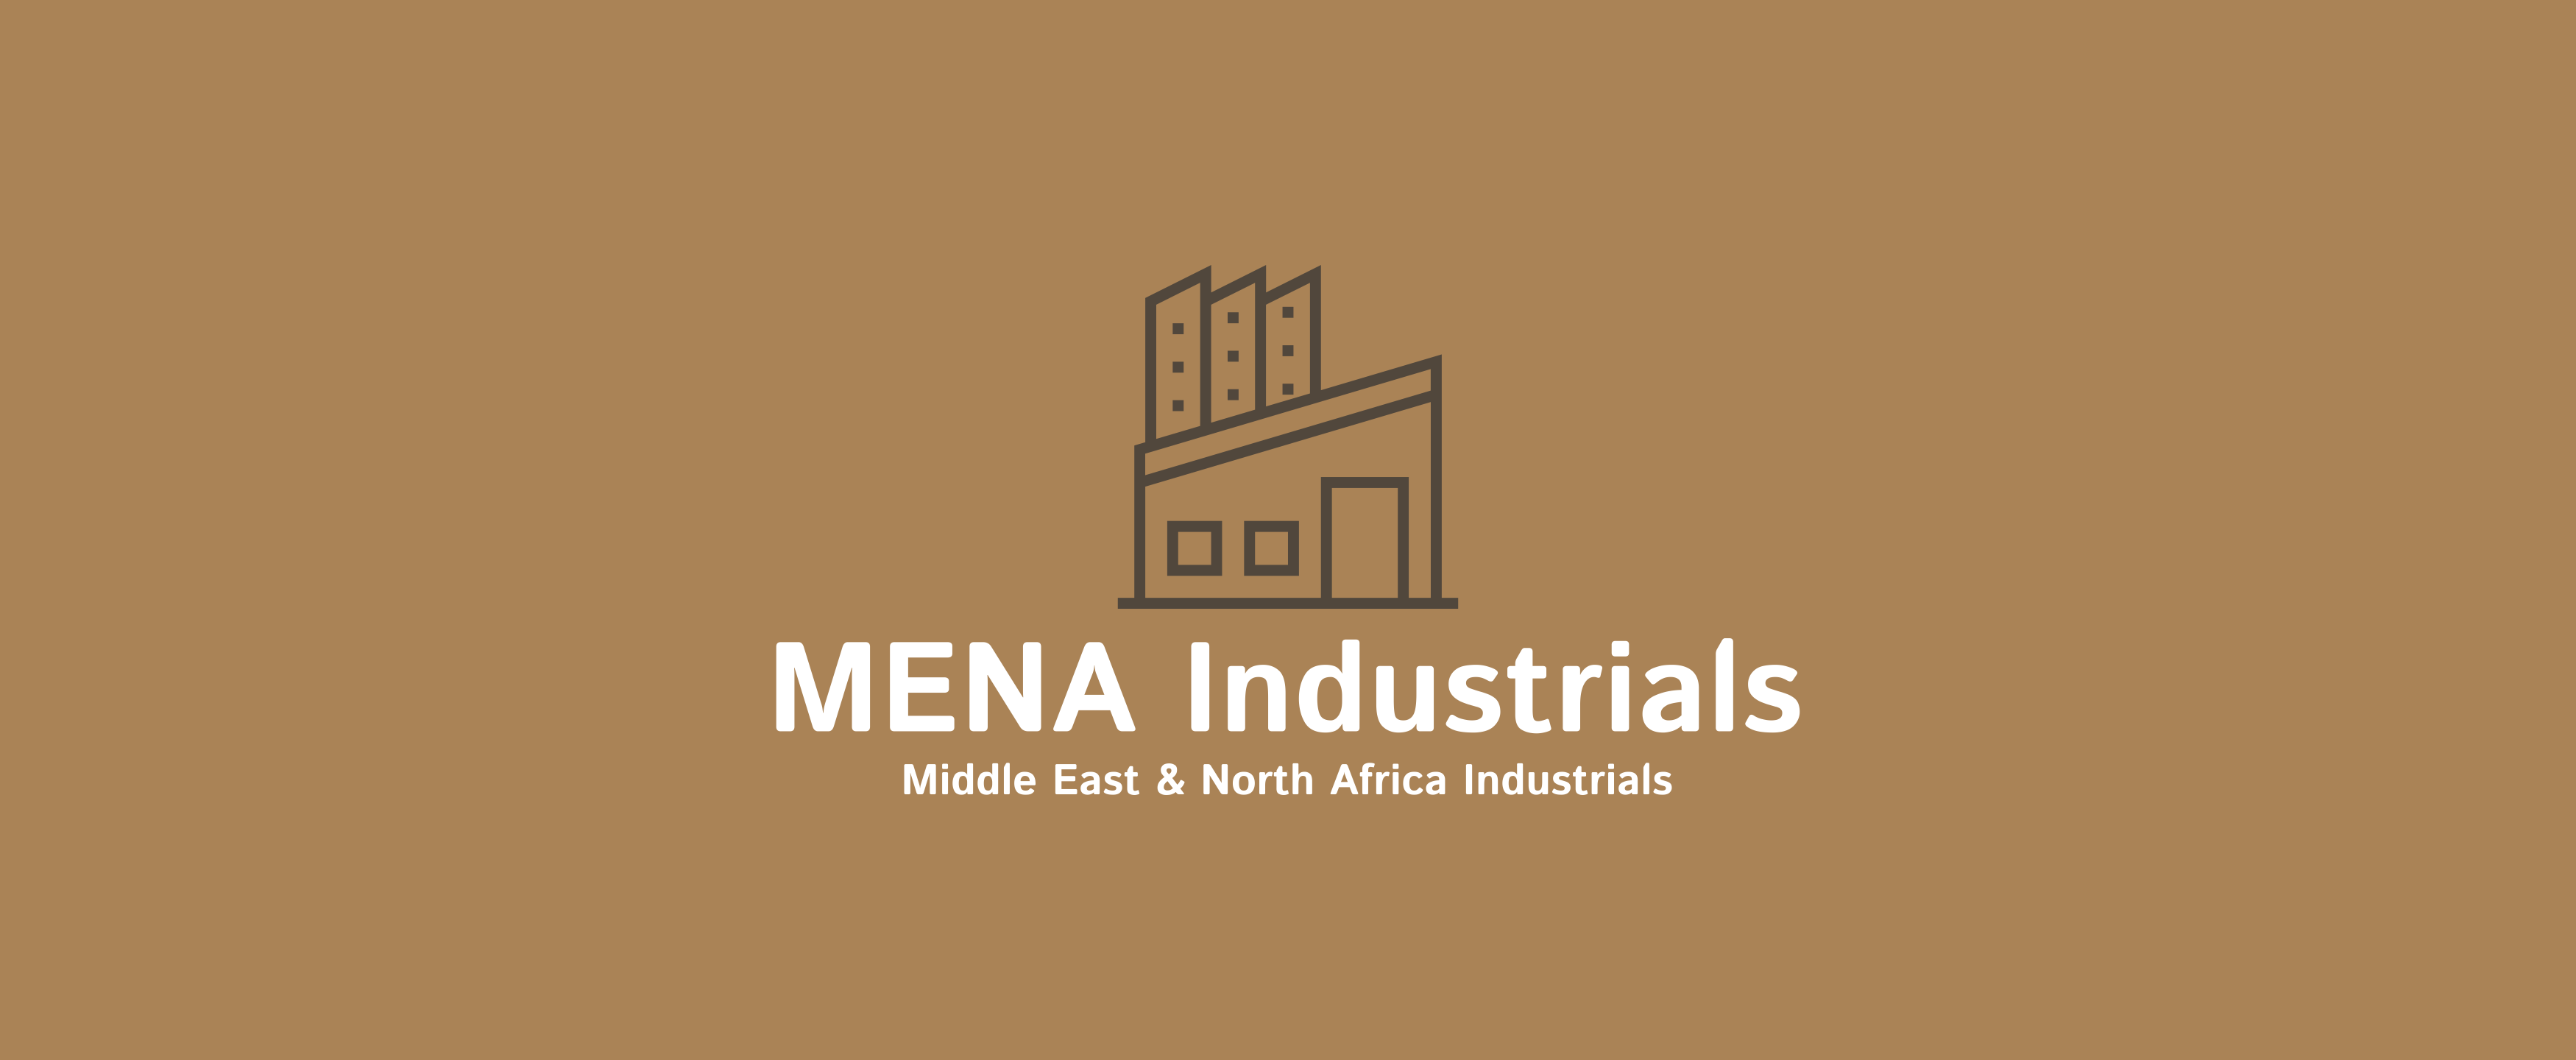 MENA Industrials